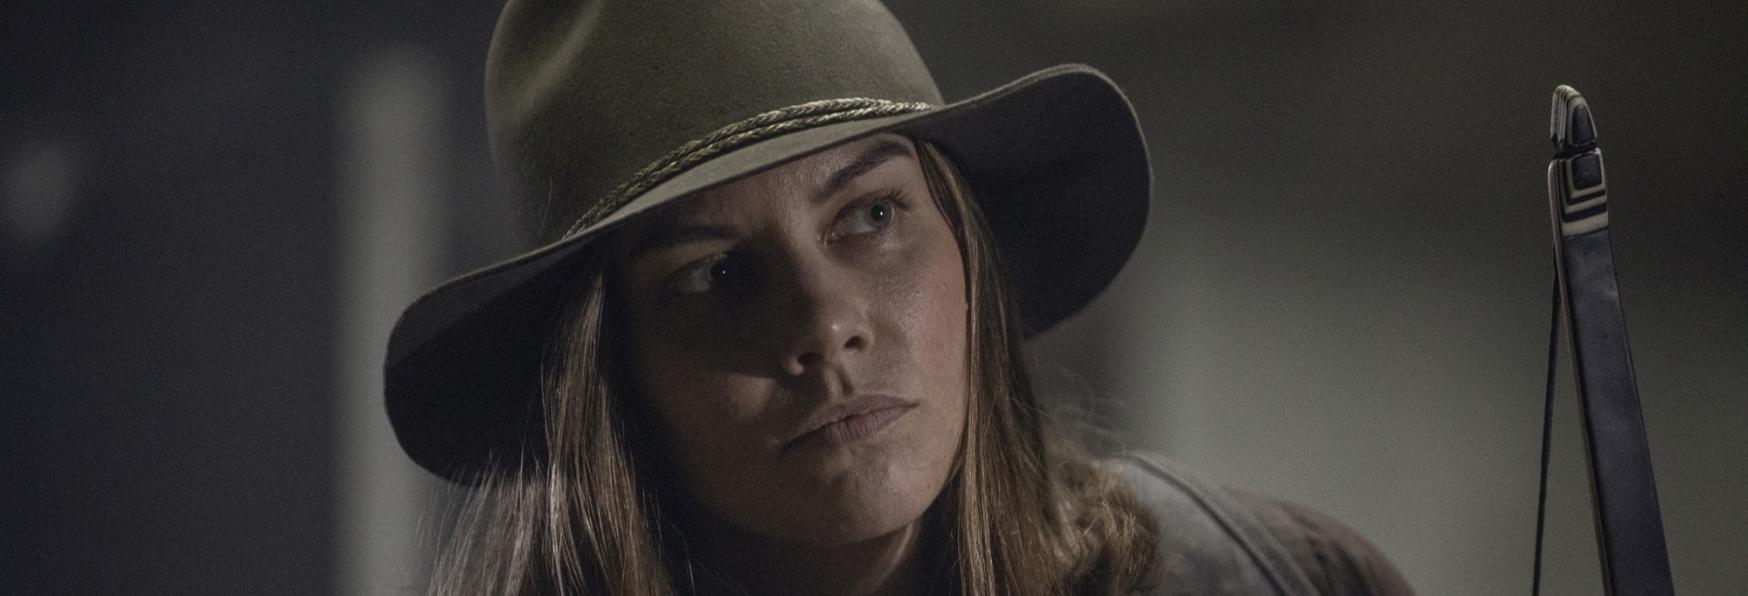 Lauren Cohan svela un possibile Spin-off su Maggie, dopo la Conclusione di The Walking Dead